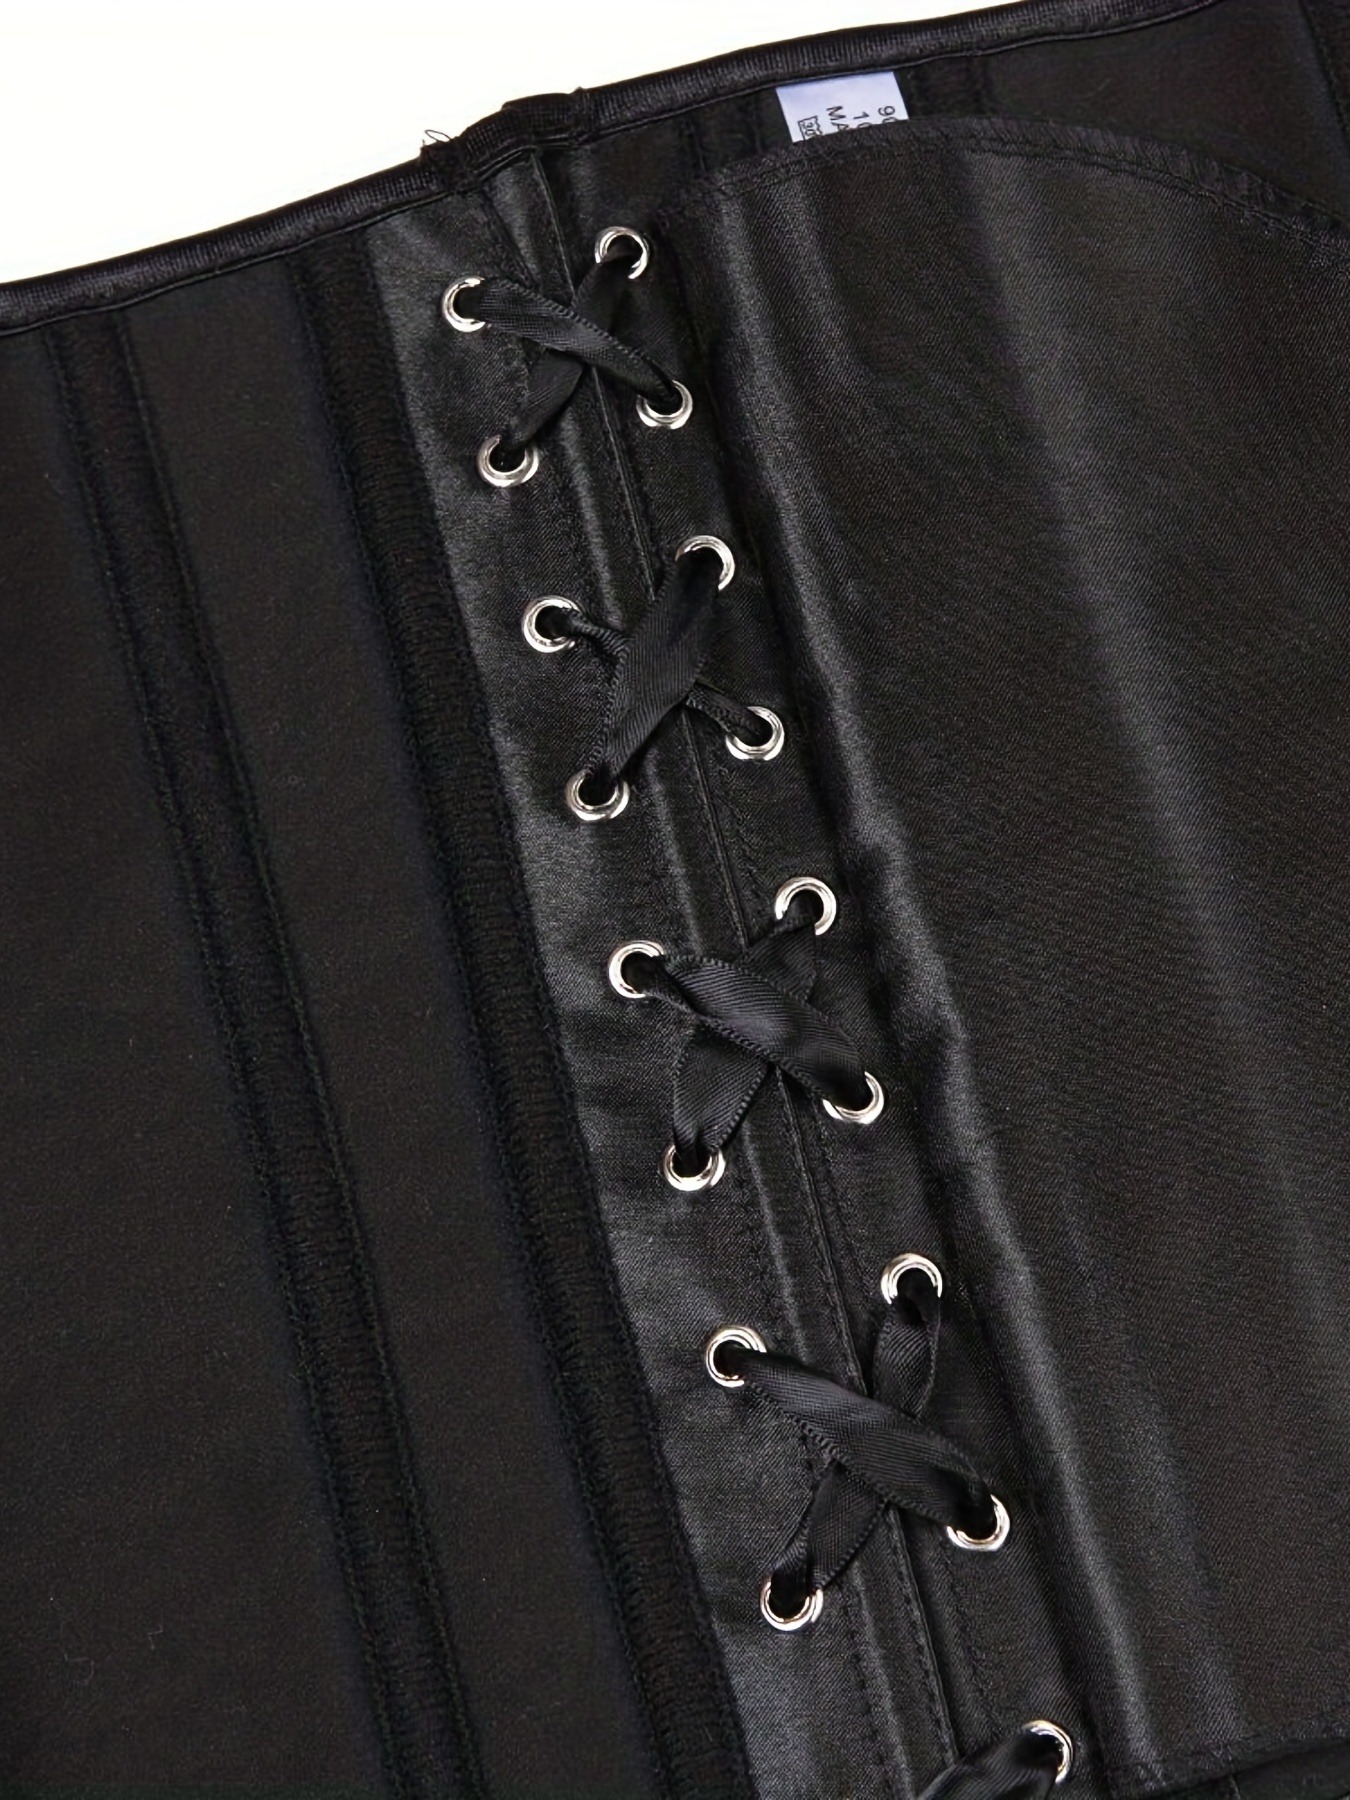 Buy Designeez Corset Lace Up Steampunk Waist Trainer Body Shaper